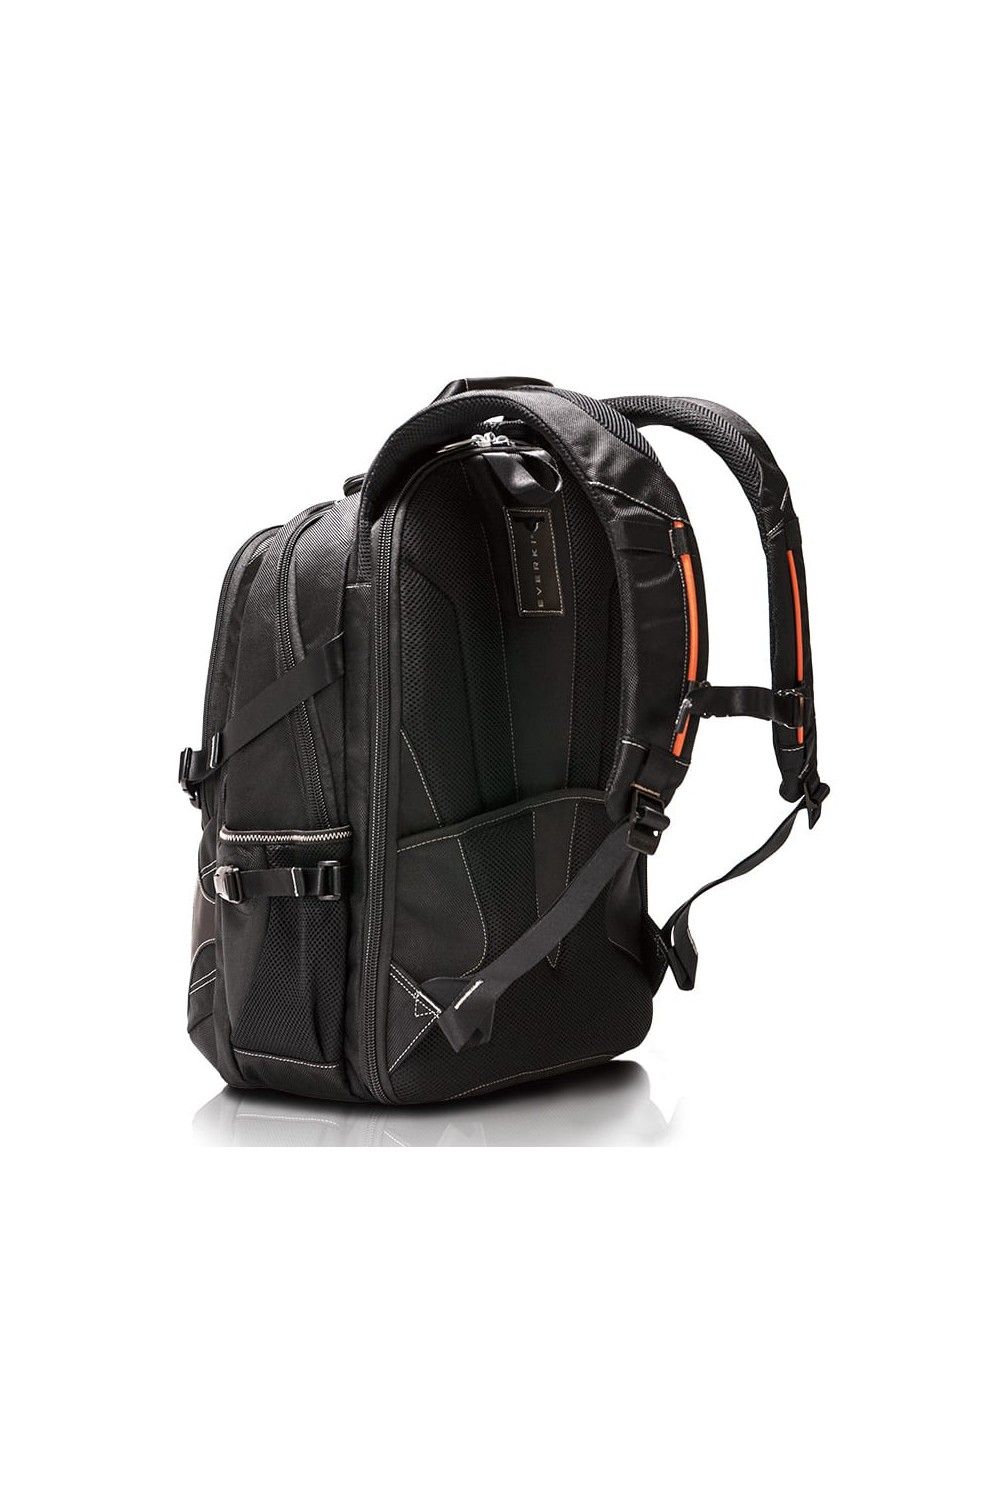 Laptop Backpack Concept 2 Everki 17.3 inch